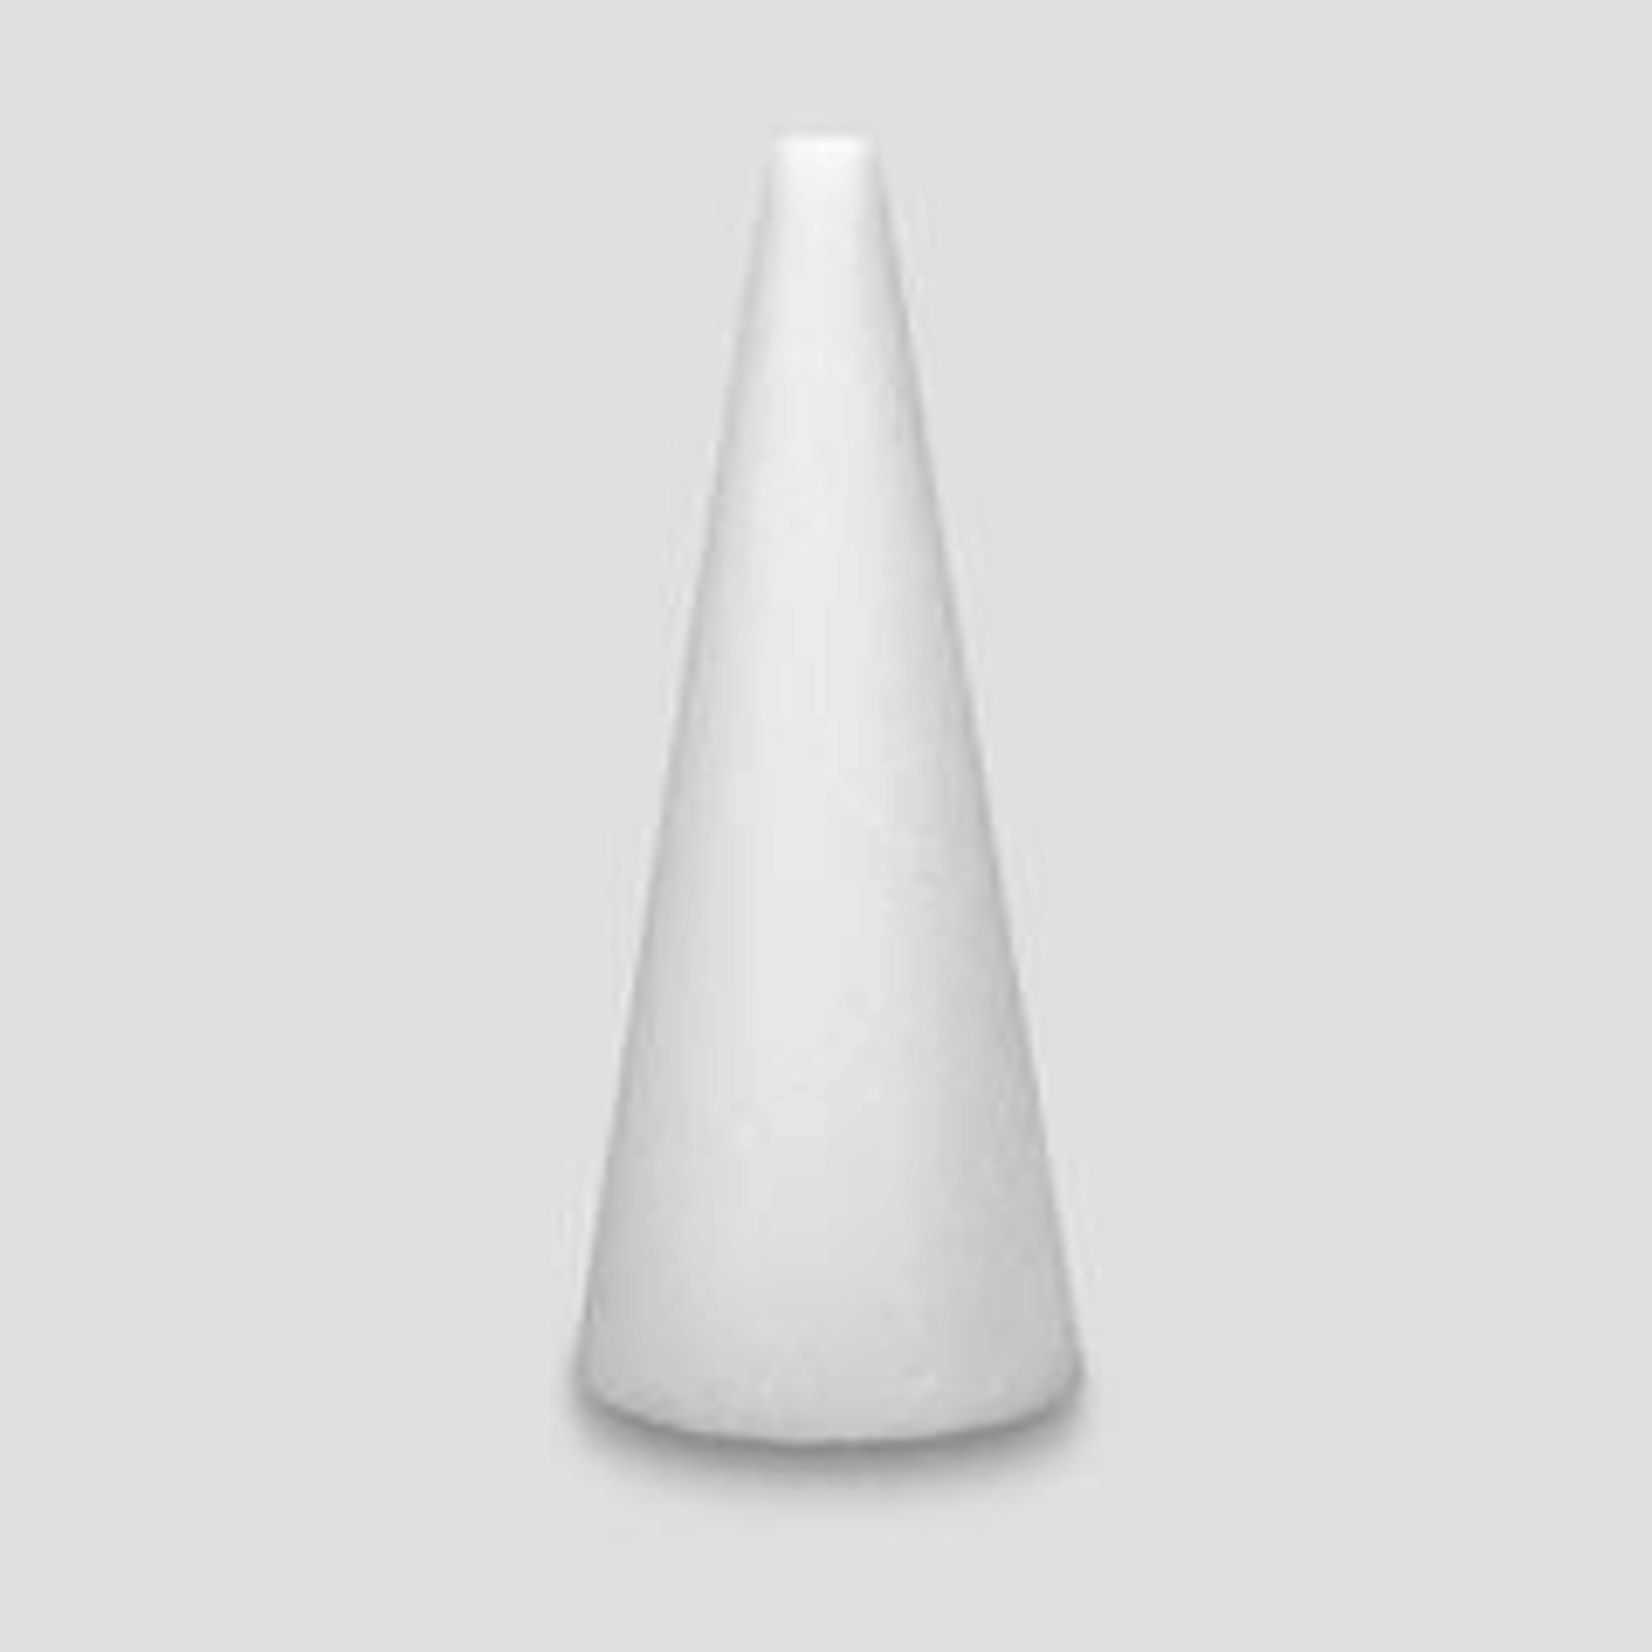 9"h x 4"   White STYROFOAM Cone